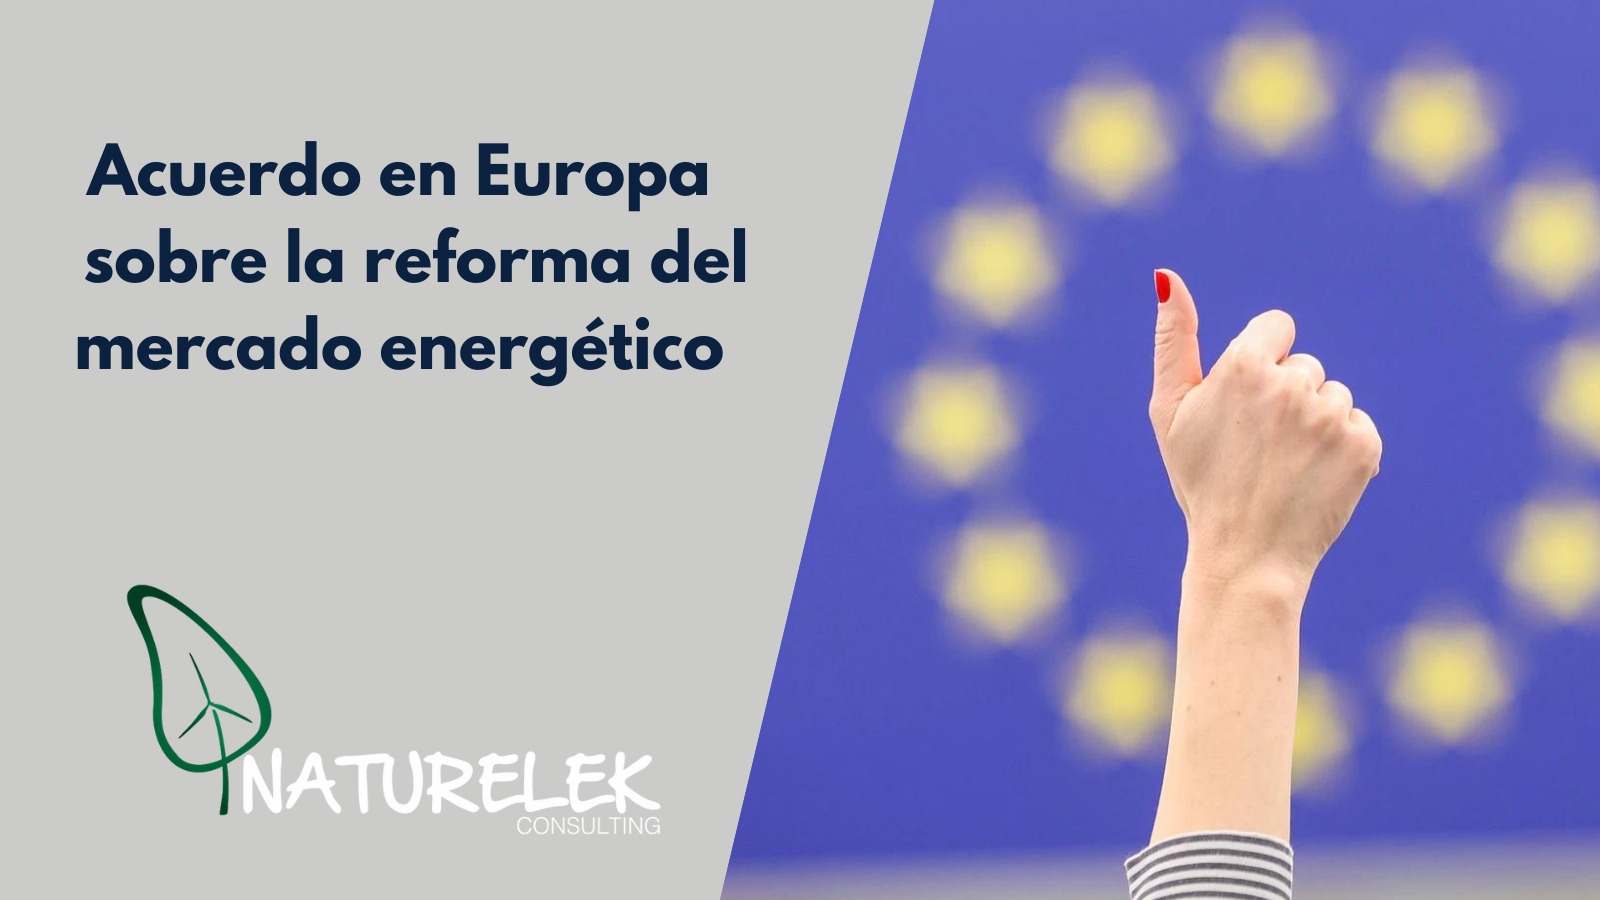 Acuerdo Europeo en el mercado energético